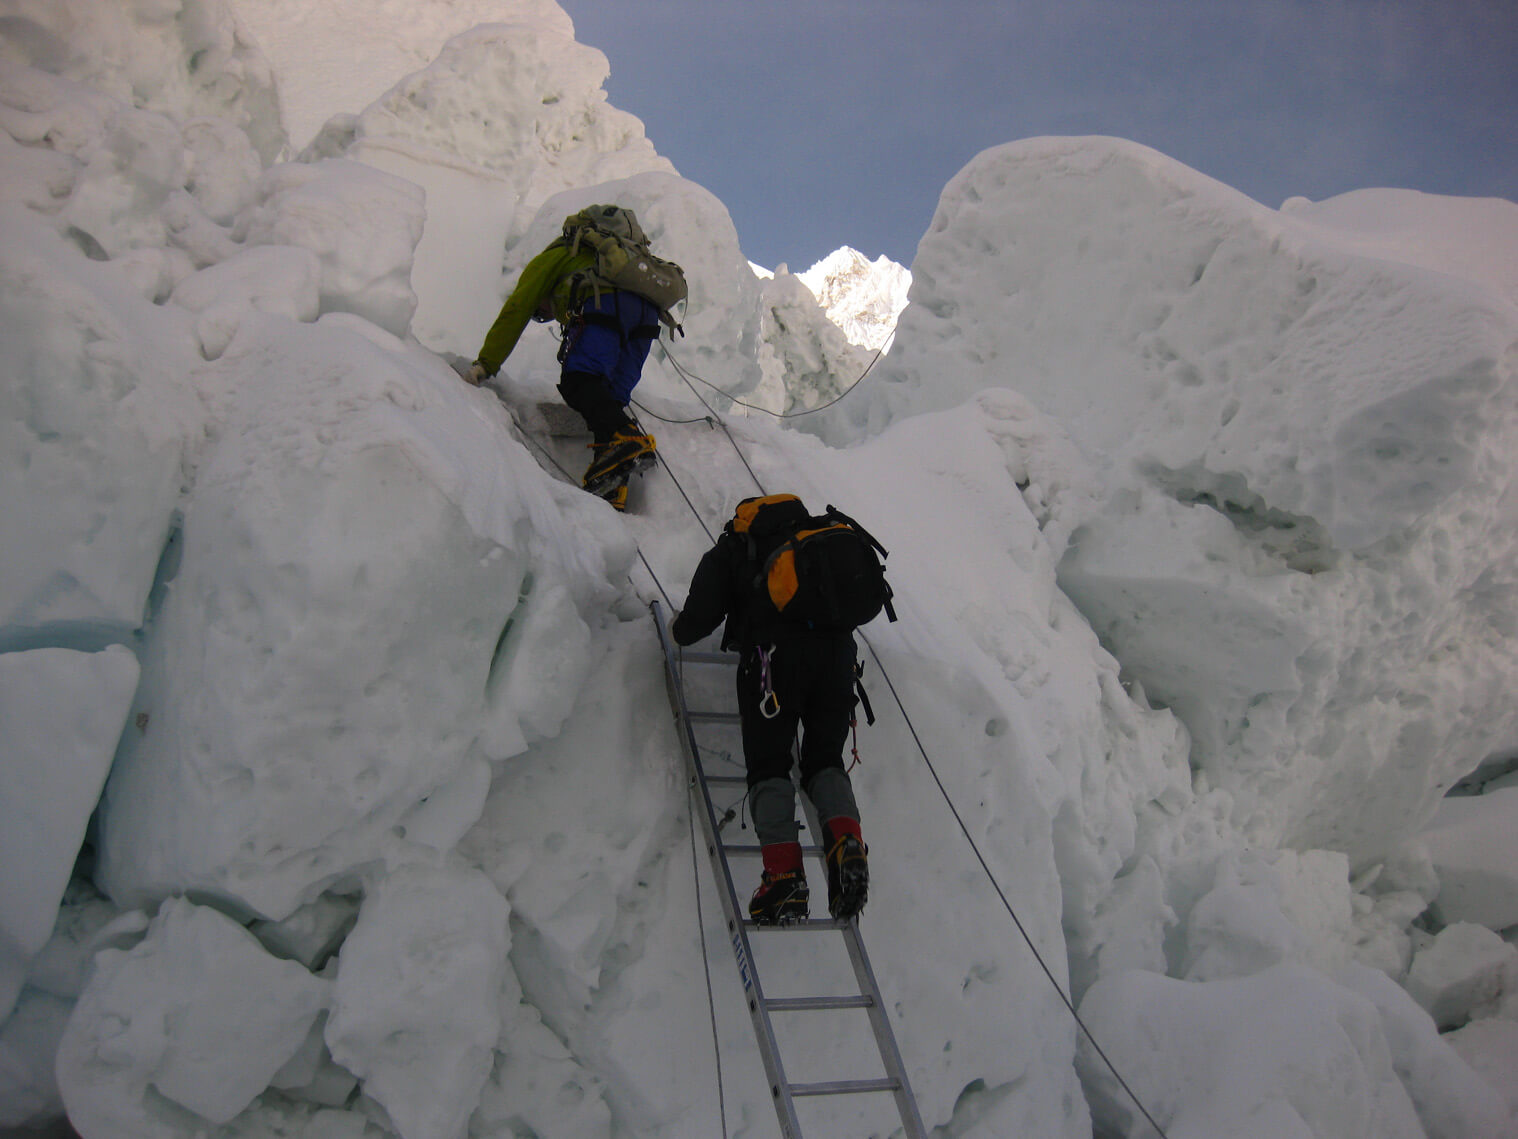 Rozhovor: Komerčný výstup na Everest nie je pre každého